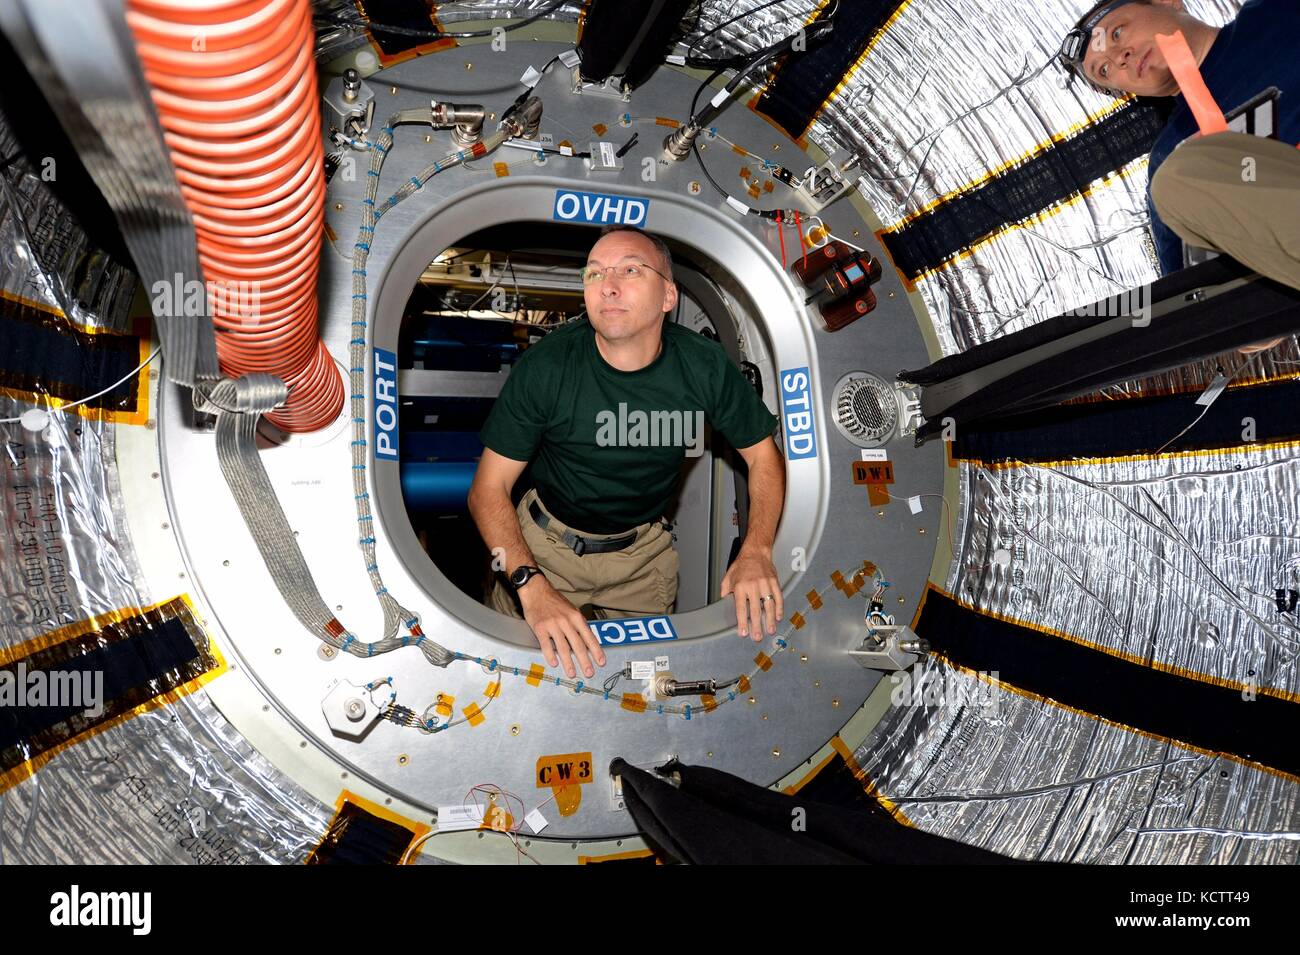 Estación espacial internacional la expedición 53 astronauta estadounidense randy bresnik entra en el interior de la viga del módulo 2 de agosto de 2017, en la órbita de la tierra. El rayo es una adición inflable conectado a la estación espacial sometido a evaluación. Foto de stock